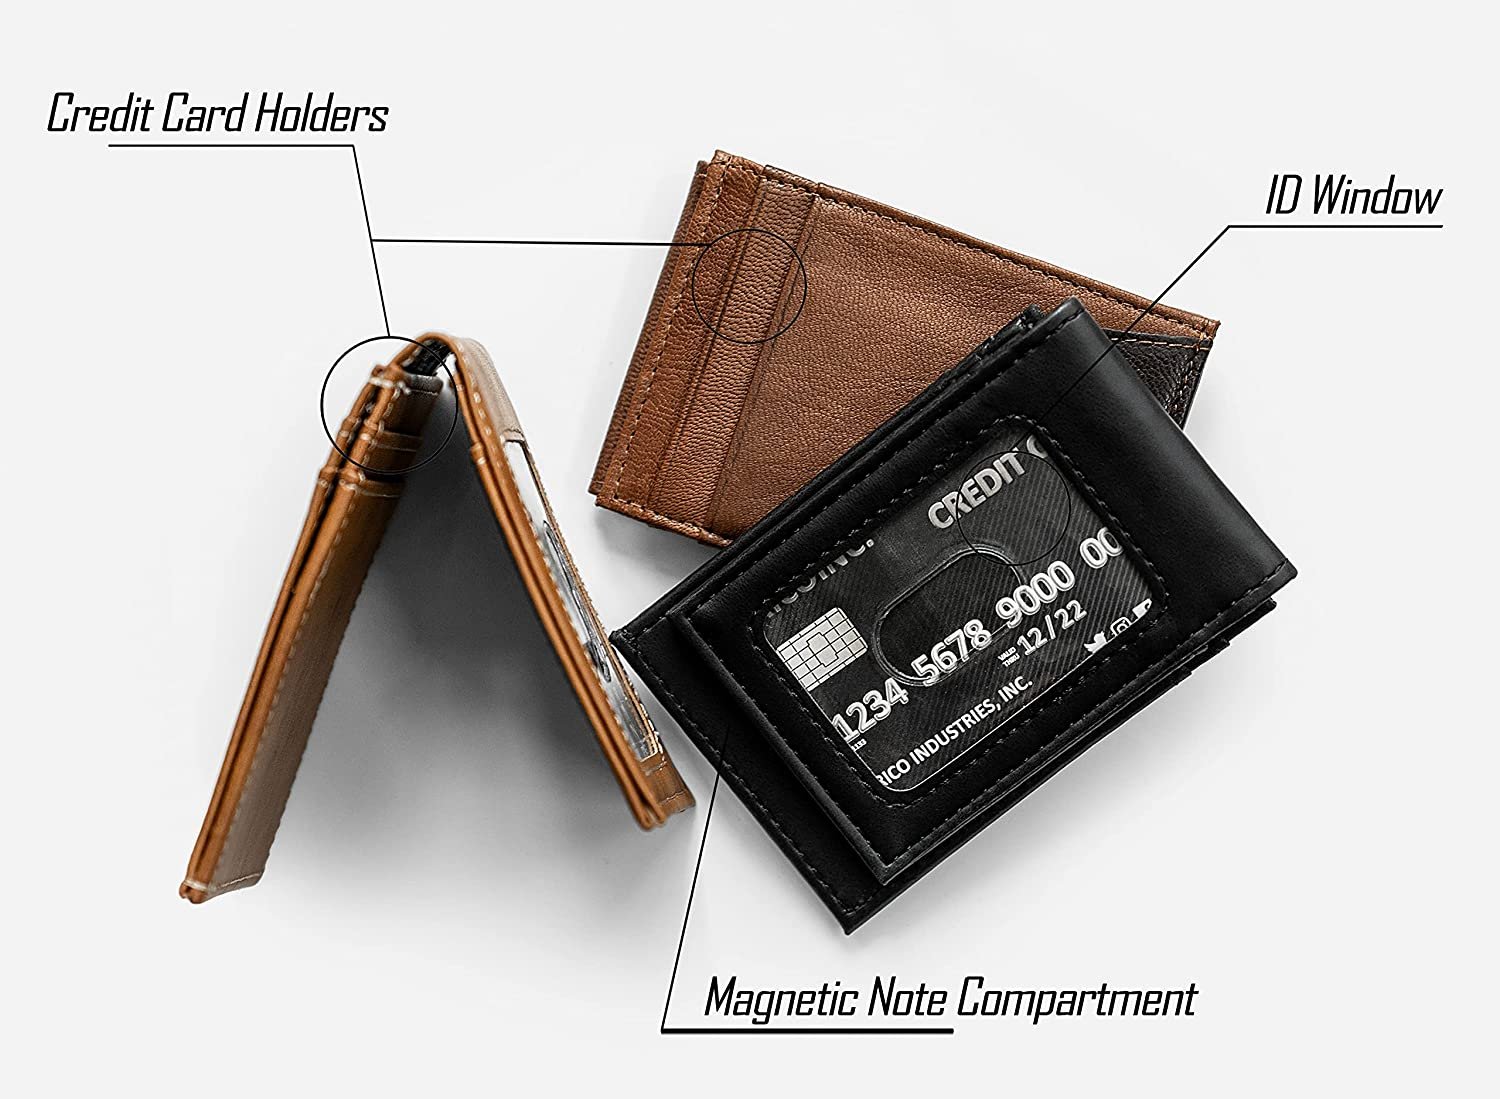 Toronto Raptors Premium Brown Leather Wallet, Front Pocket Magnetic Money Clip, Laser Engraved, Vegan